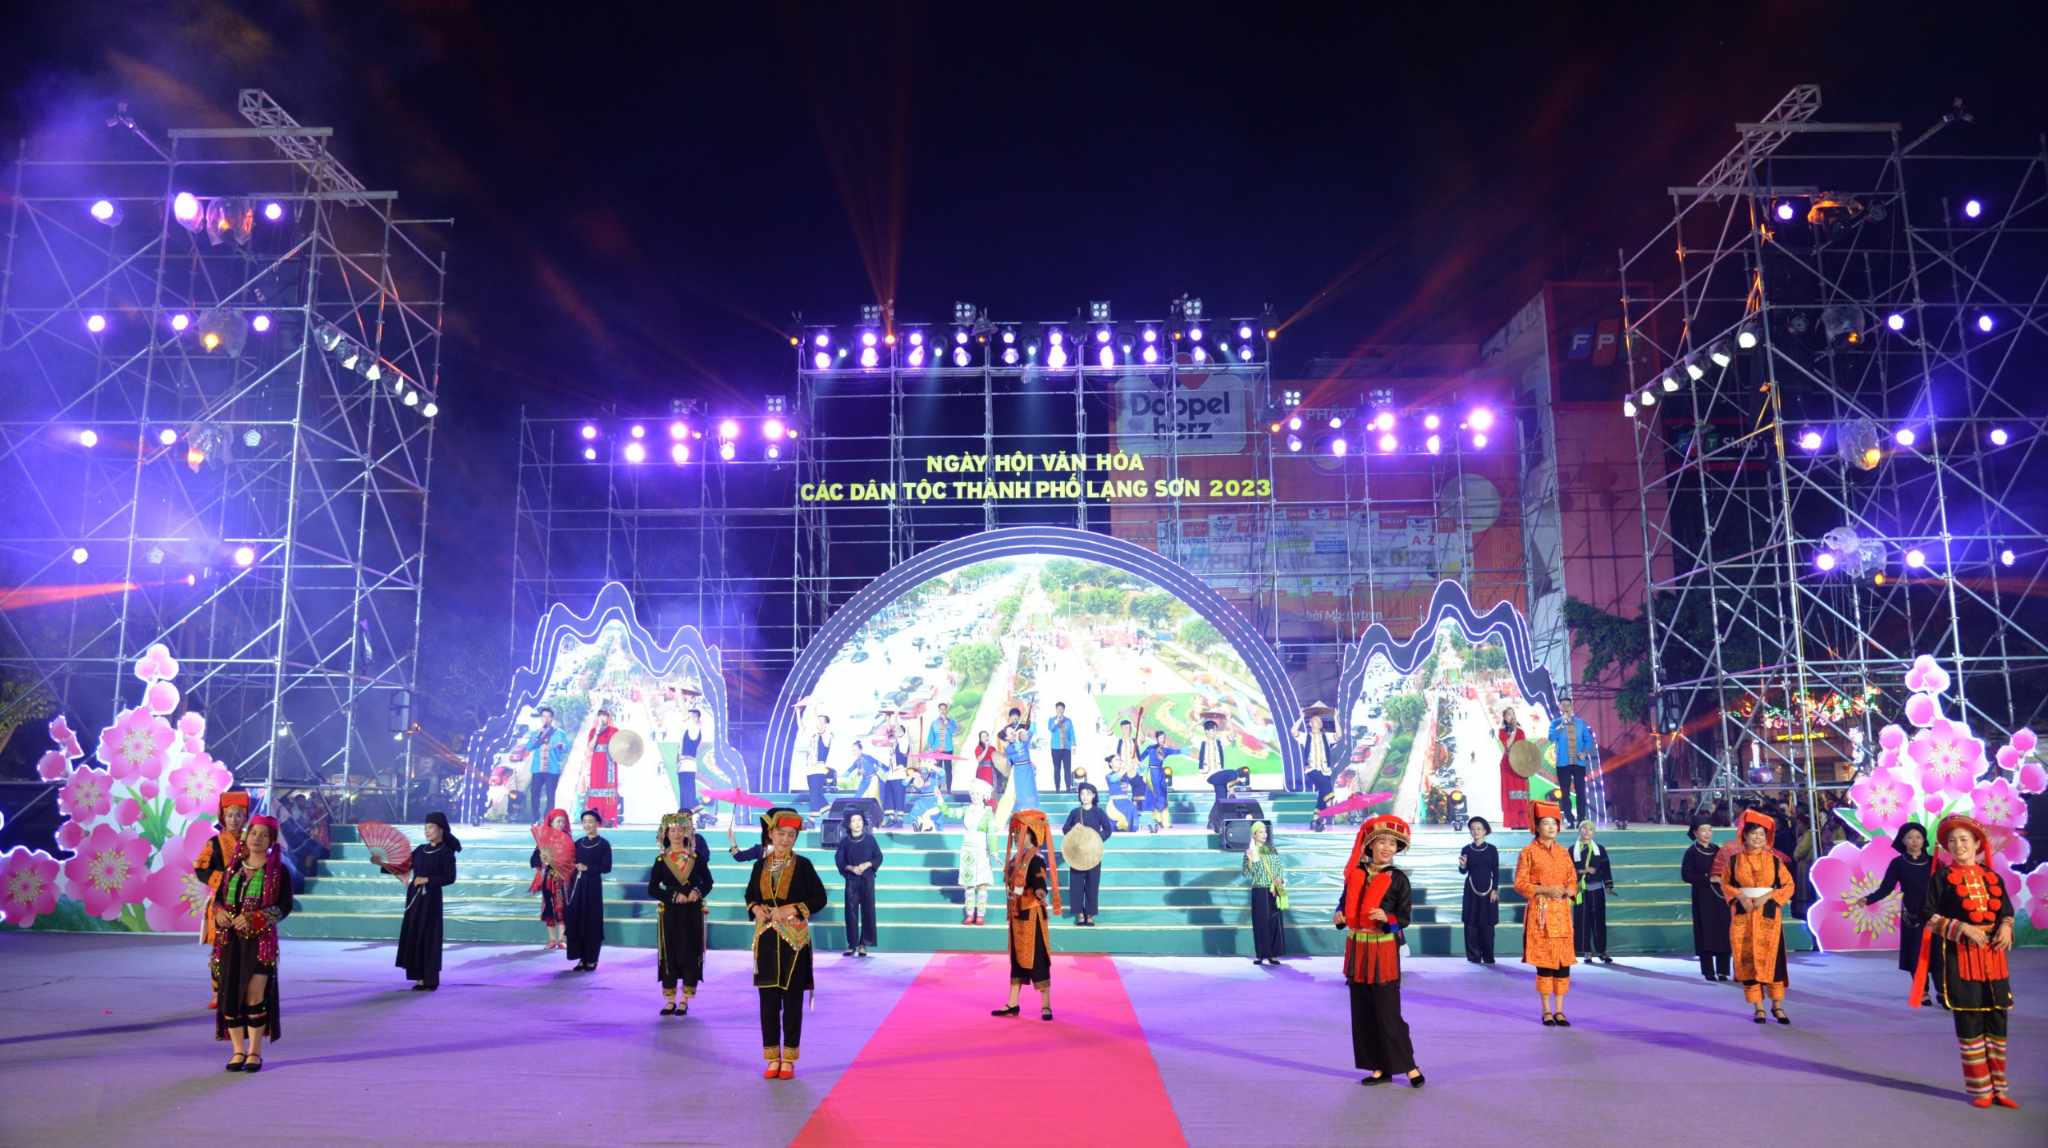 Tưng bừng Ngày hội Văn hóa các dân tộc thành phố Lạng Sơn